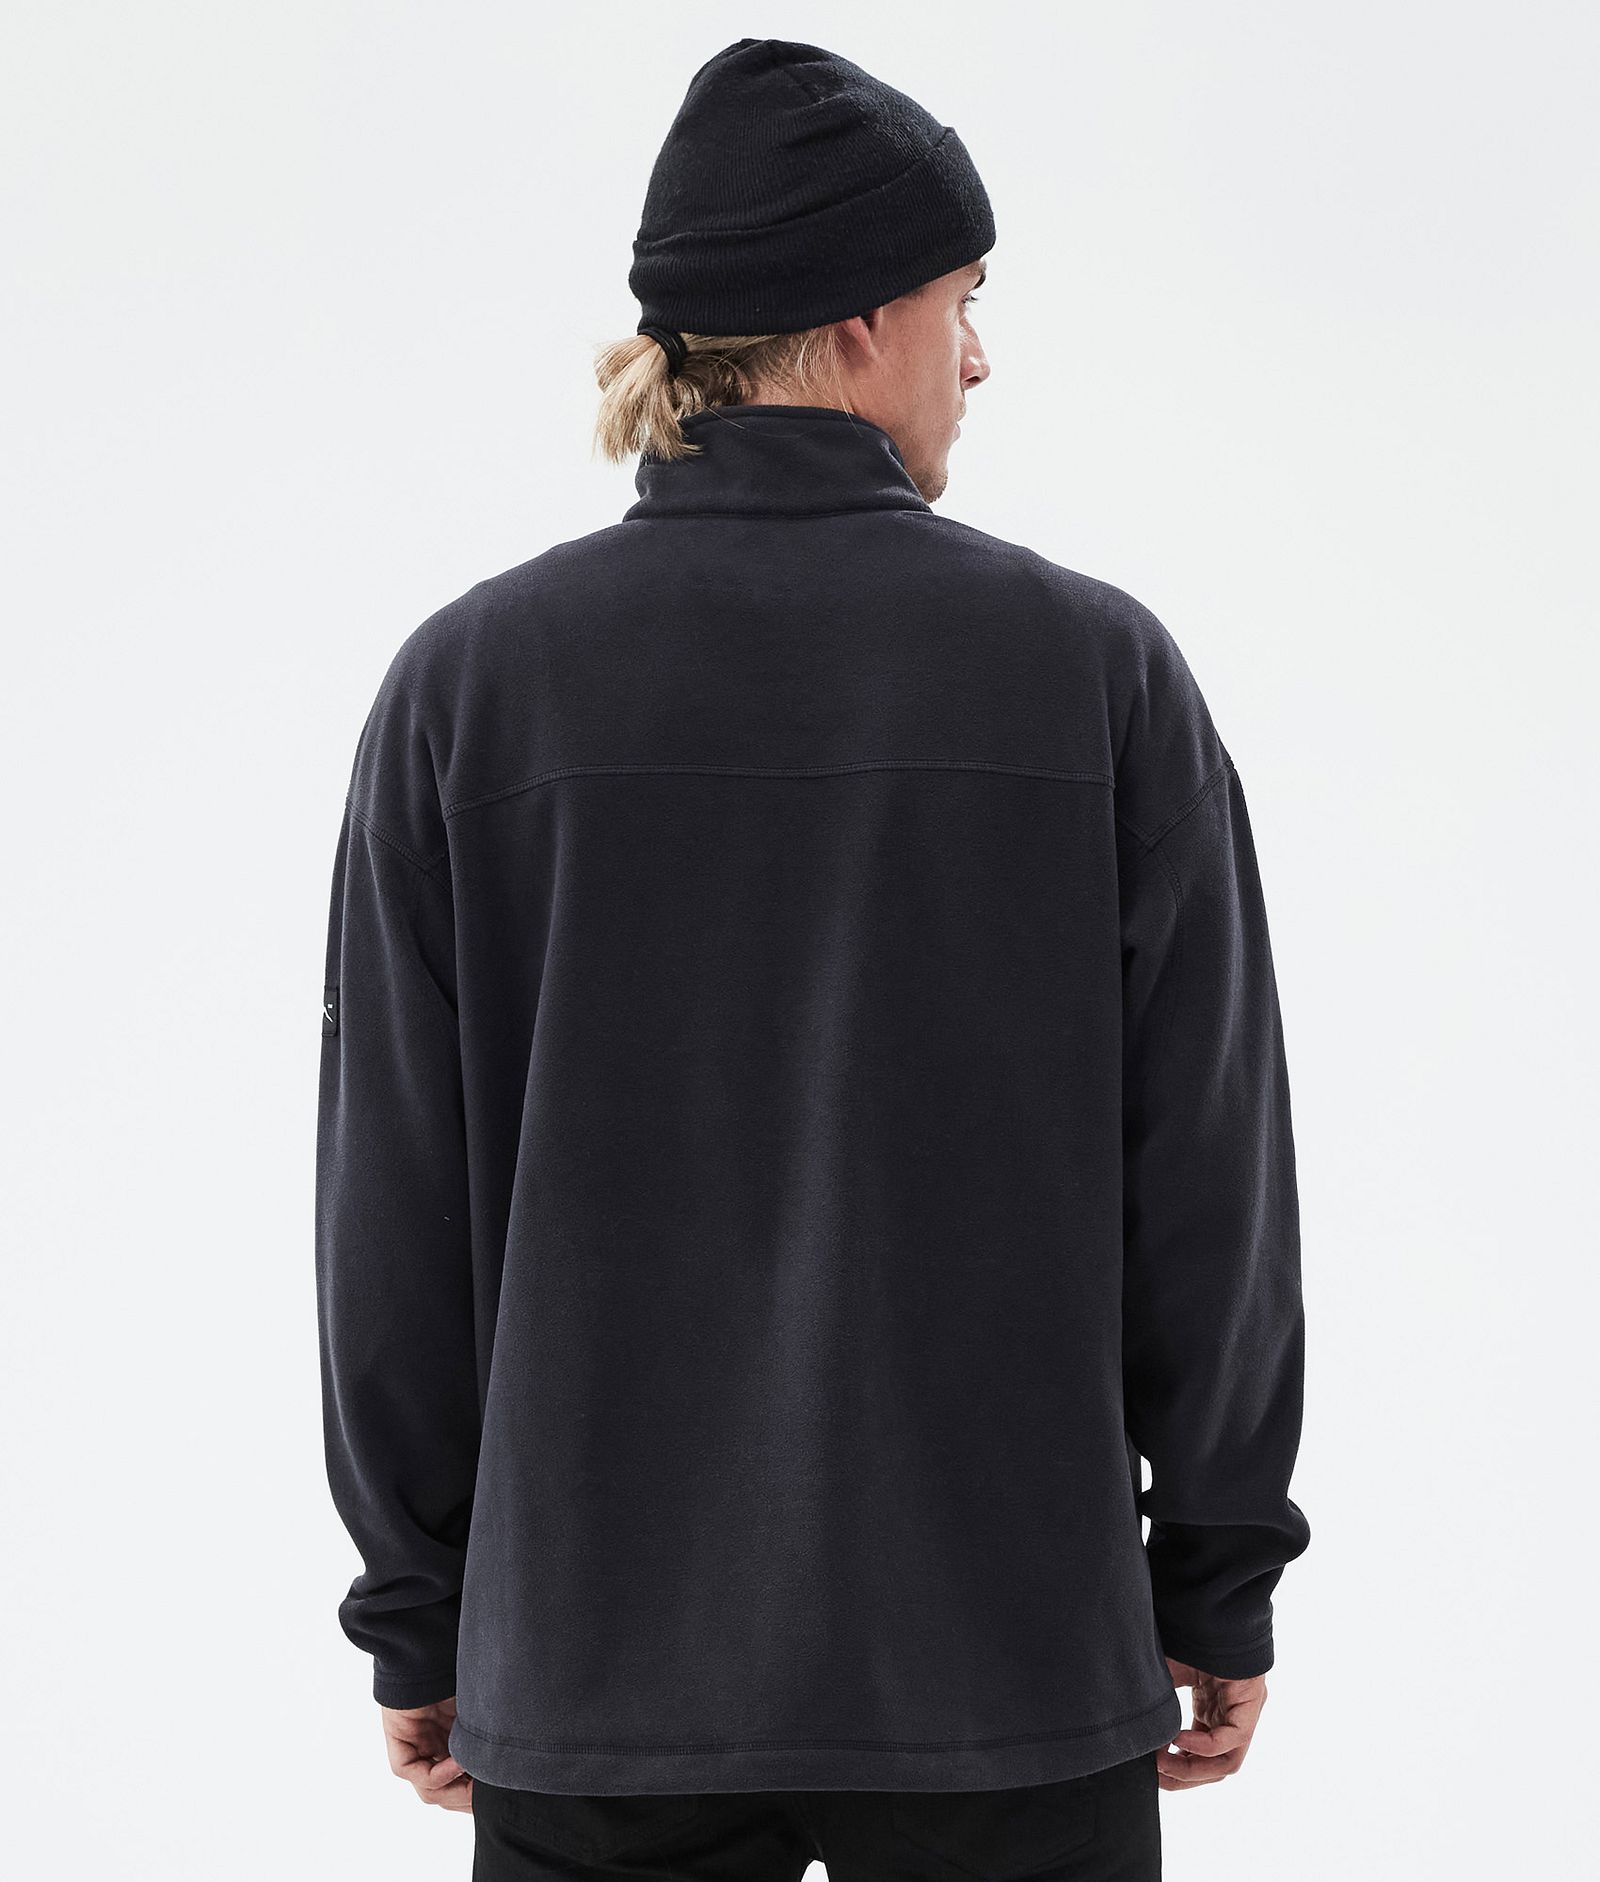 Comfy Fleece Sweater Men Black Renewed, Image 6 of 6